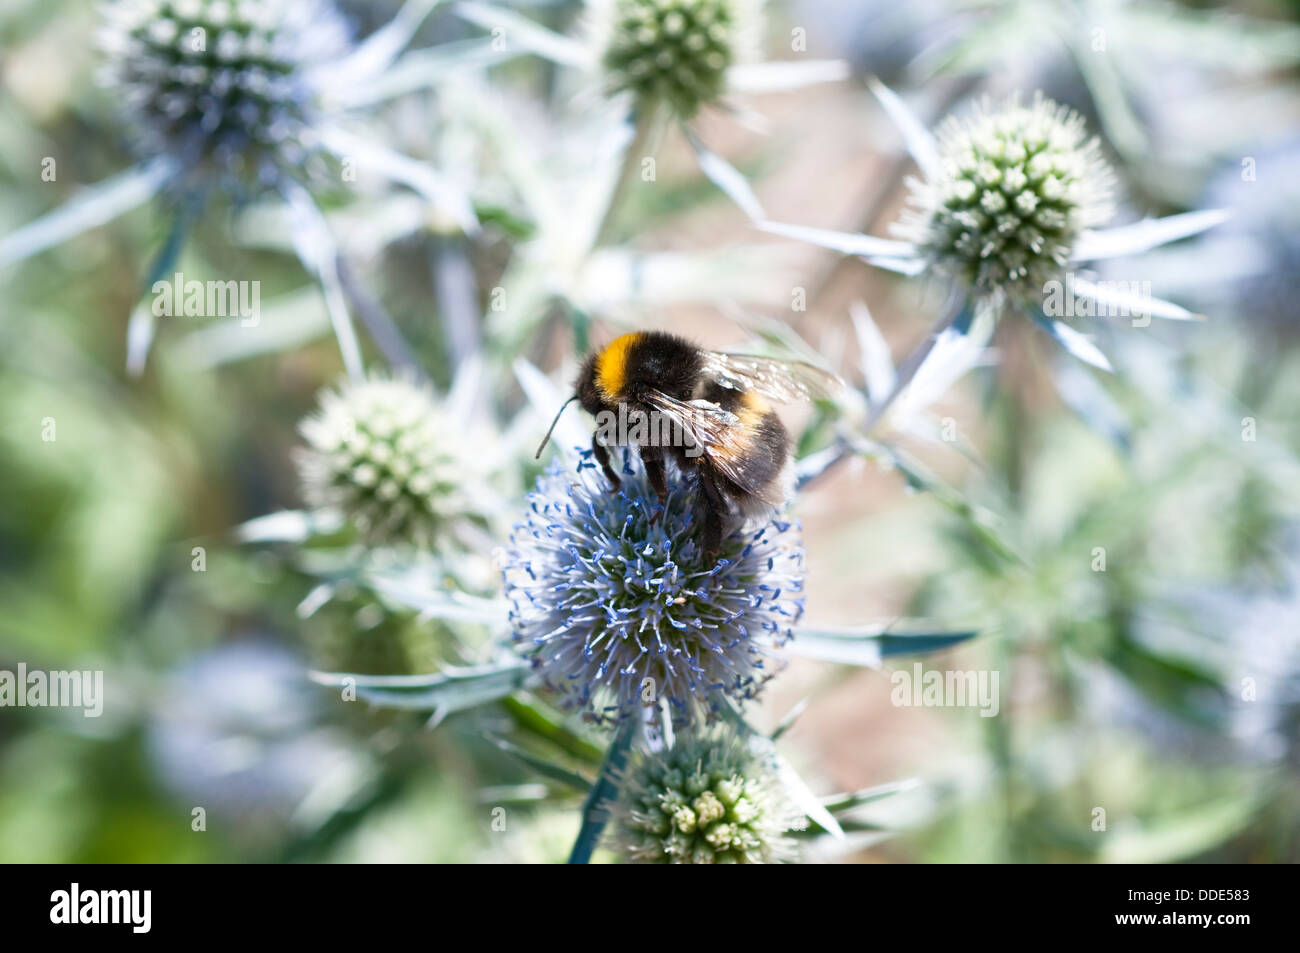 Bee feeding on eryngium caeruleum flower or eryngo or sea holly Stock Photo